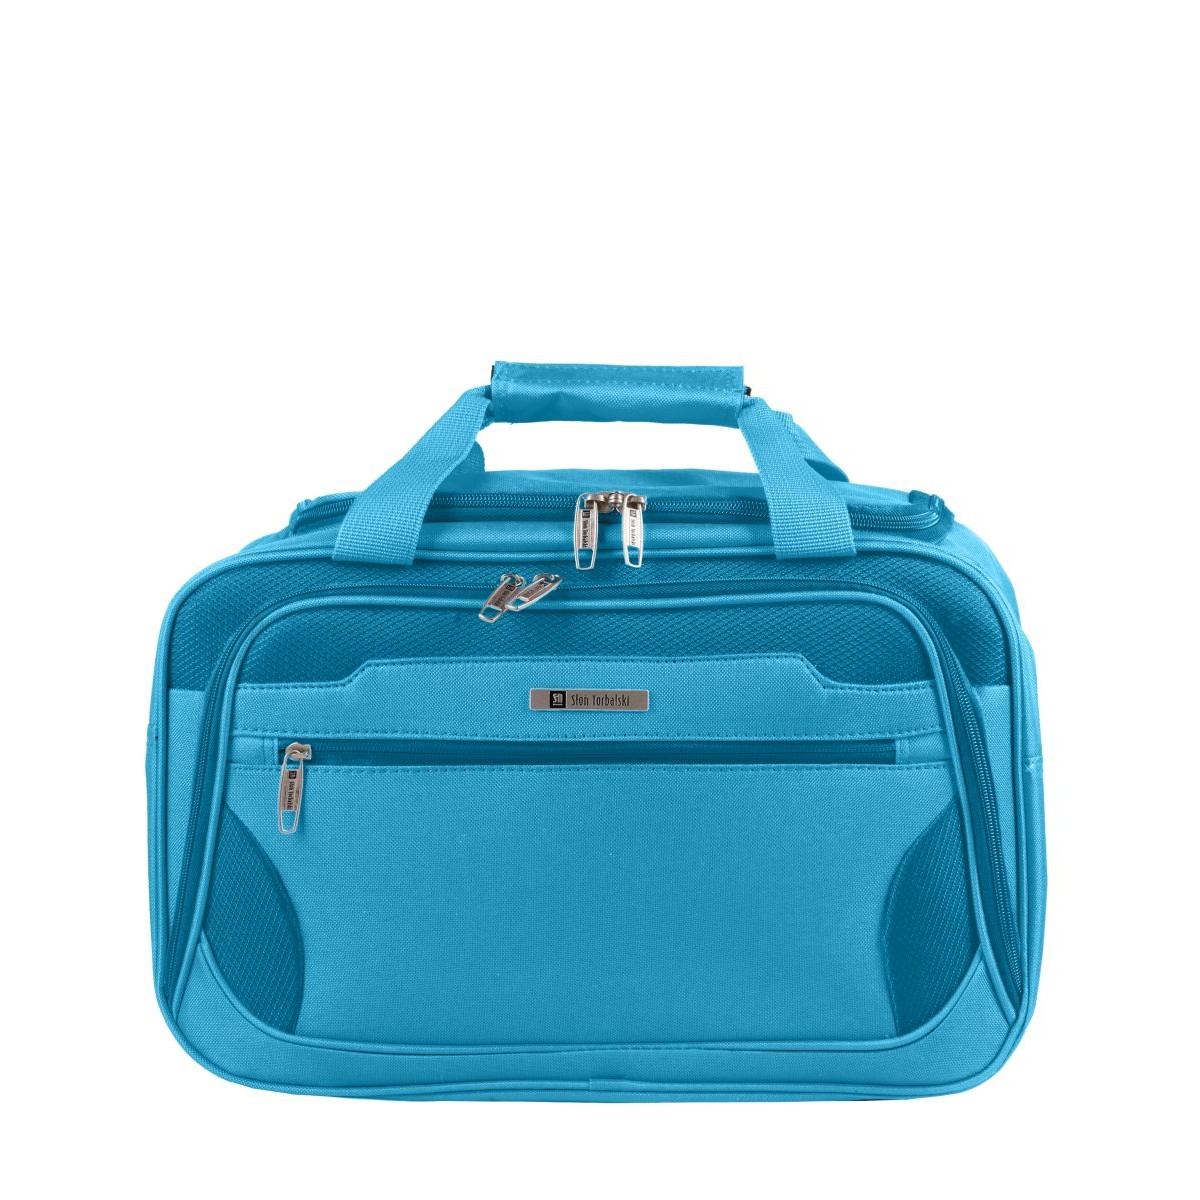 niebieska torba podróżna materiałowa bagaż podręczny 40x20x25cm